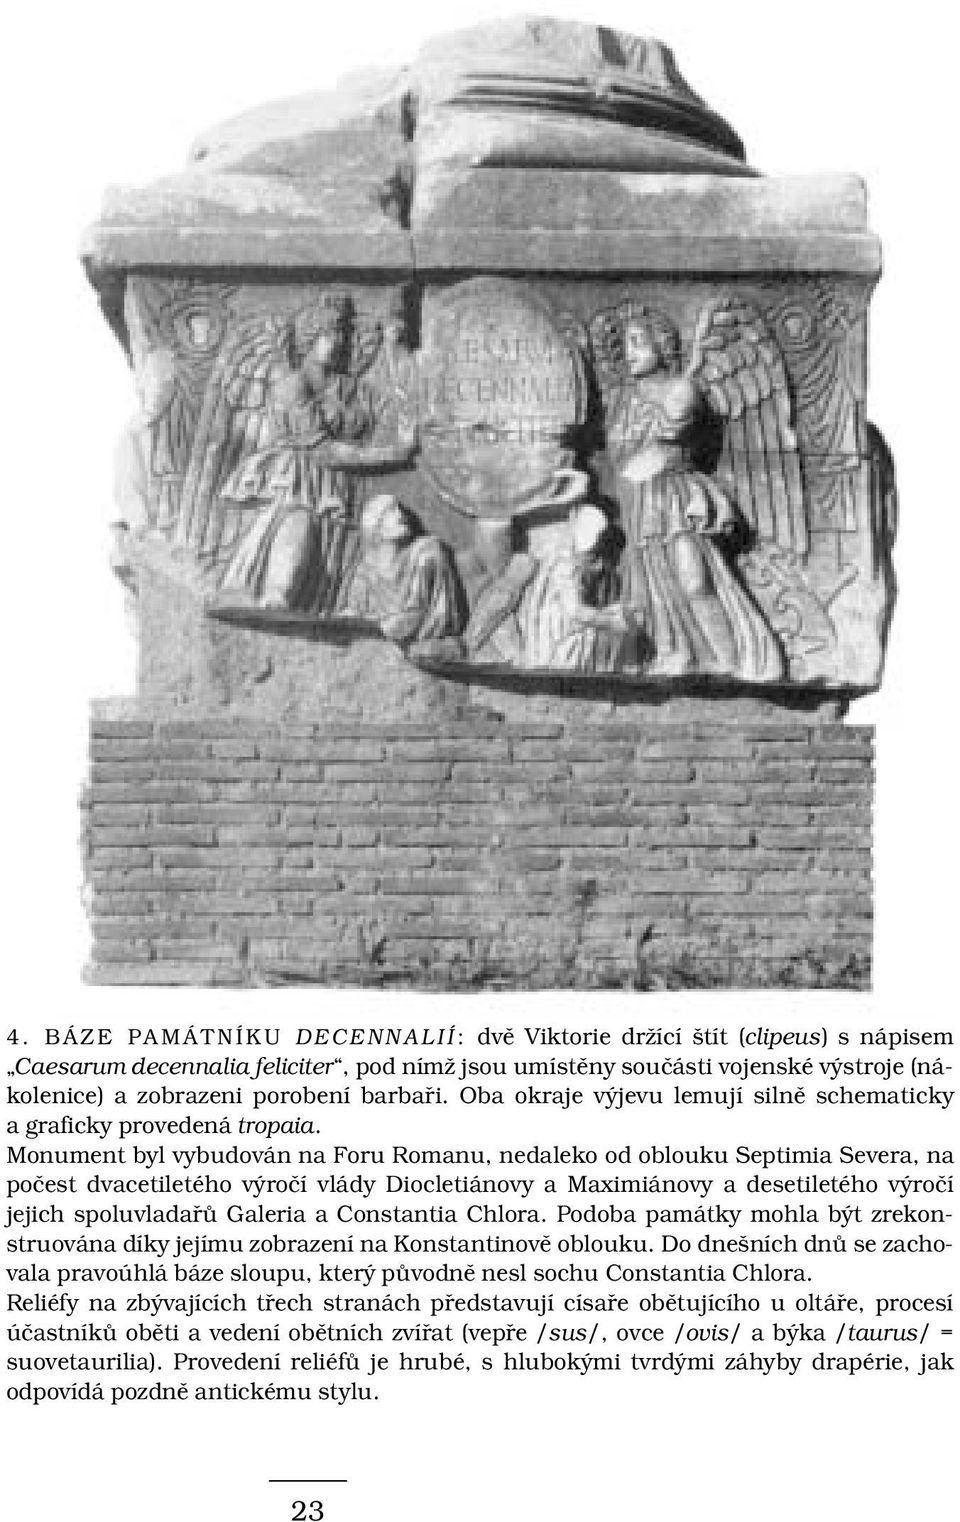 Monument byl vybudován na Foru Romanu, nedaleko od oblouku Septimia Severa, na počest dvacetiletého výročí vlády Diocletiánovy a Maximiánovy a desetiletého výročí jejich spoluvladařů Galeria a